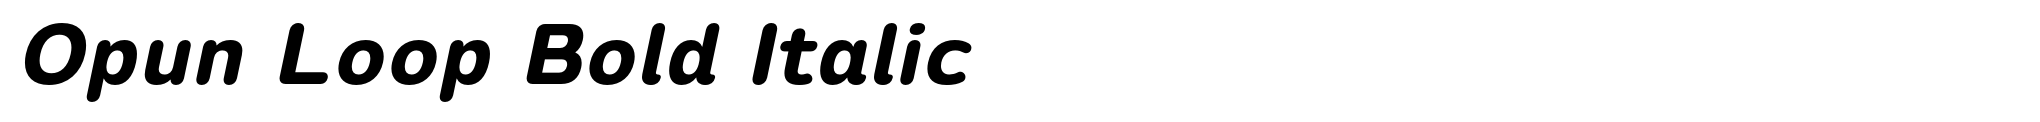 Opun Loop Bold Italic image